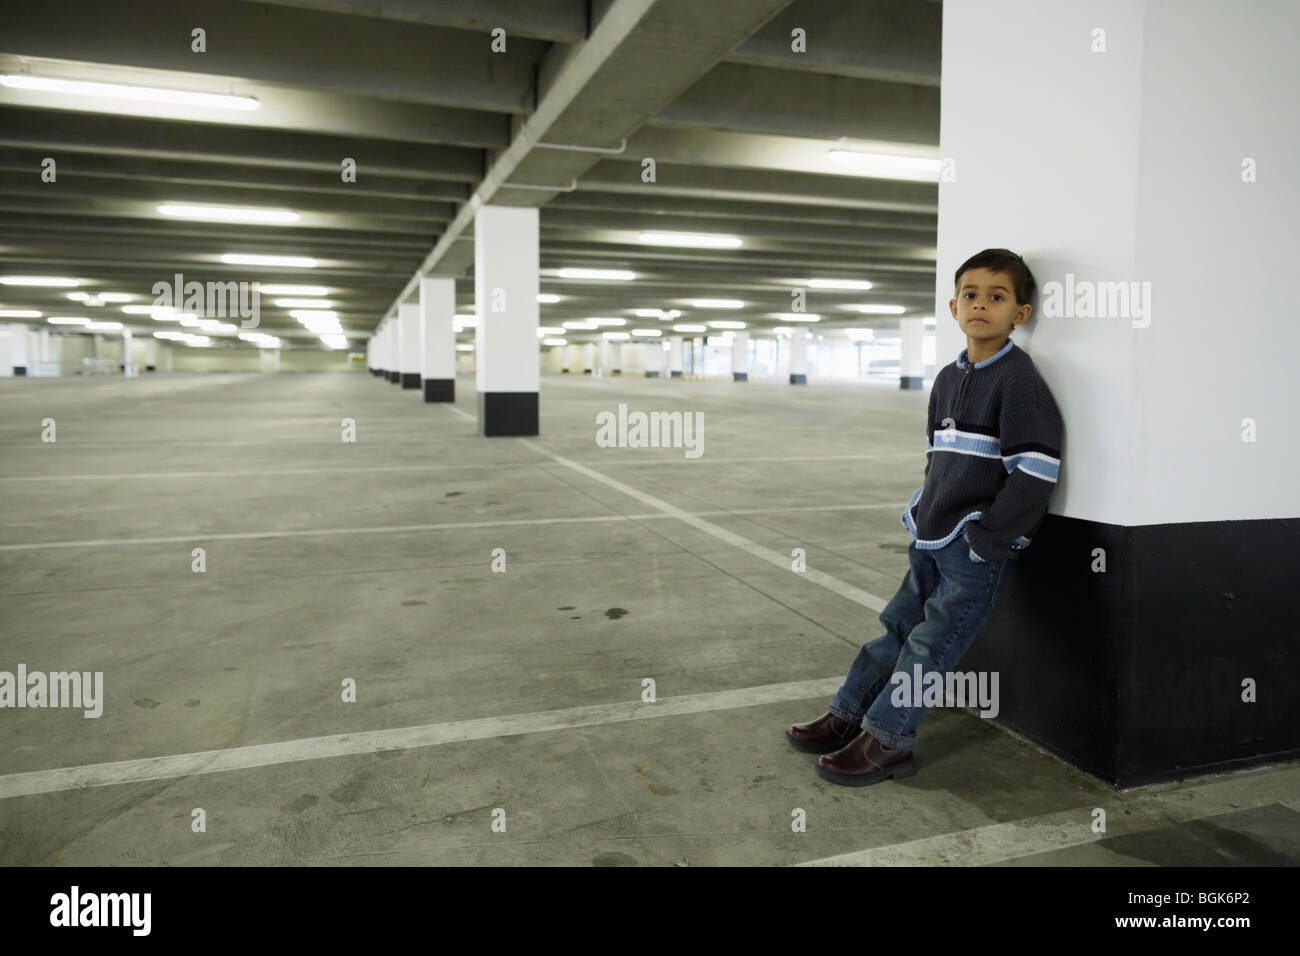 Boy leans against concrete pillar in empty car park Stock Photo